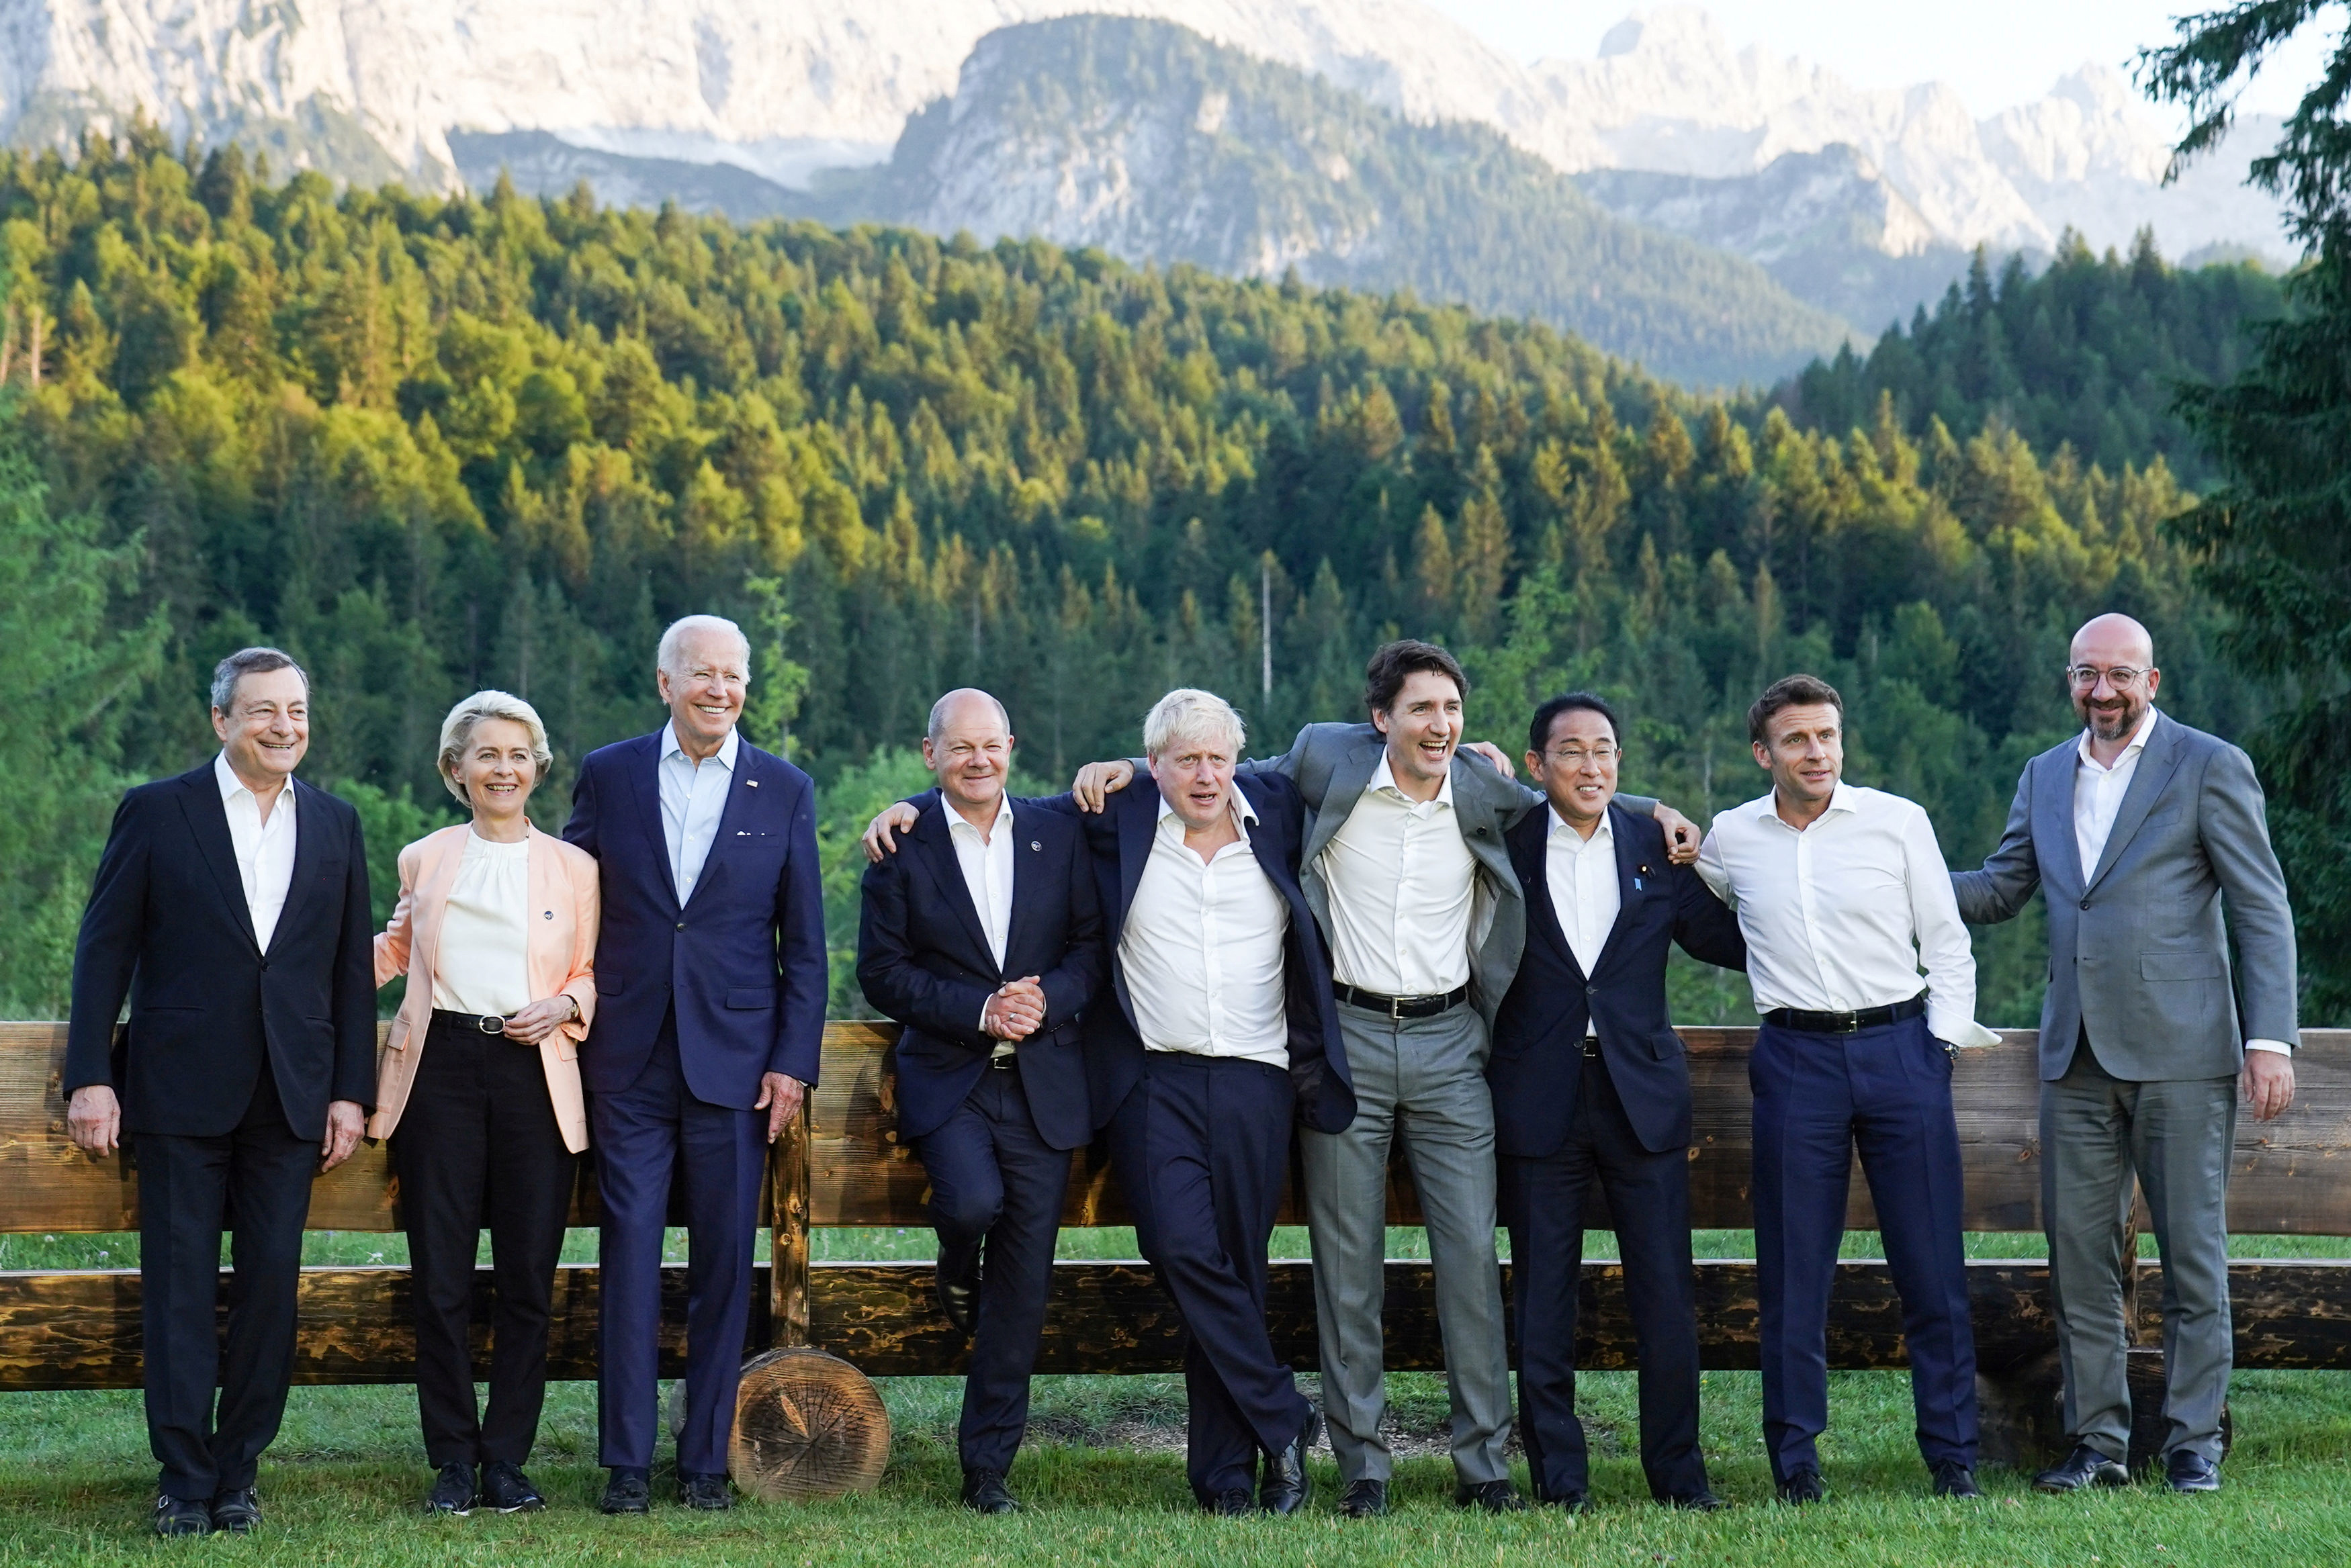 Les dirigeants du G7 se sont rencontrés à Elmau, en Allemagne (Stefan Rousseau/Pool via REUTERS)